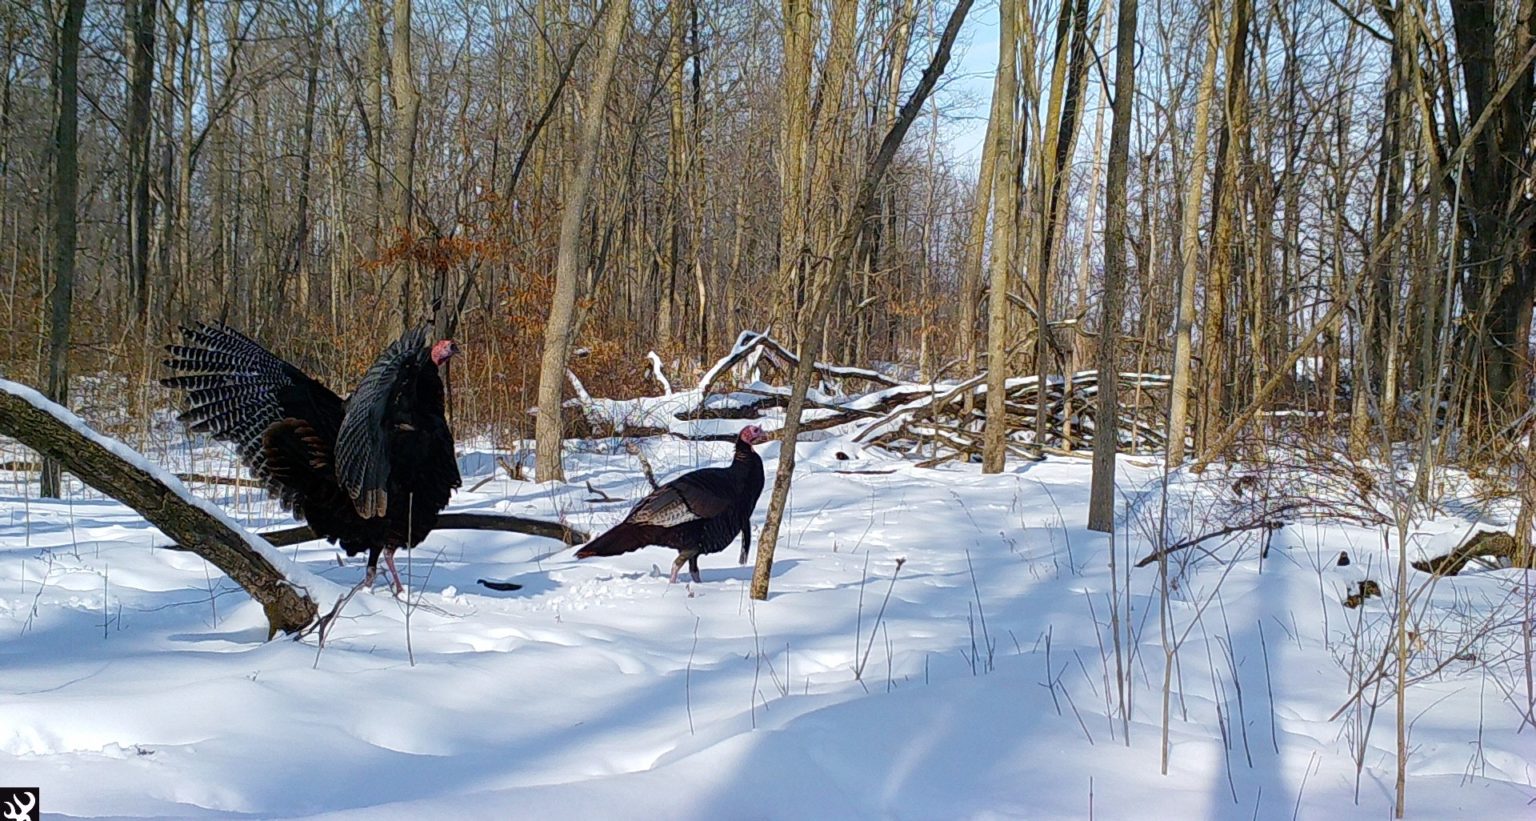 Turkeys walk through a snowy forest